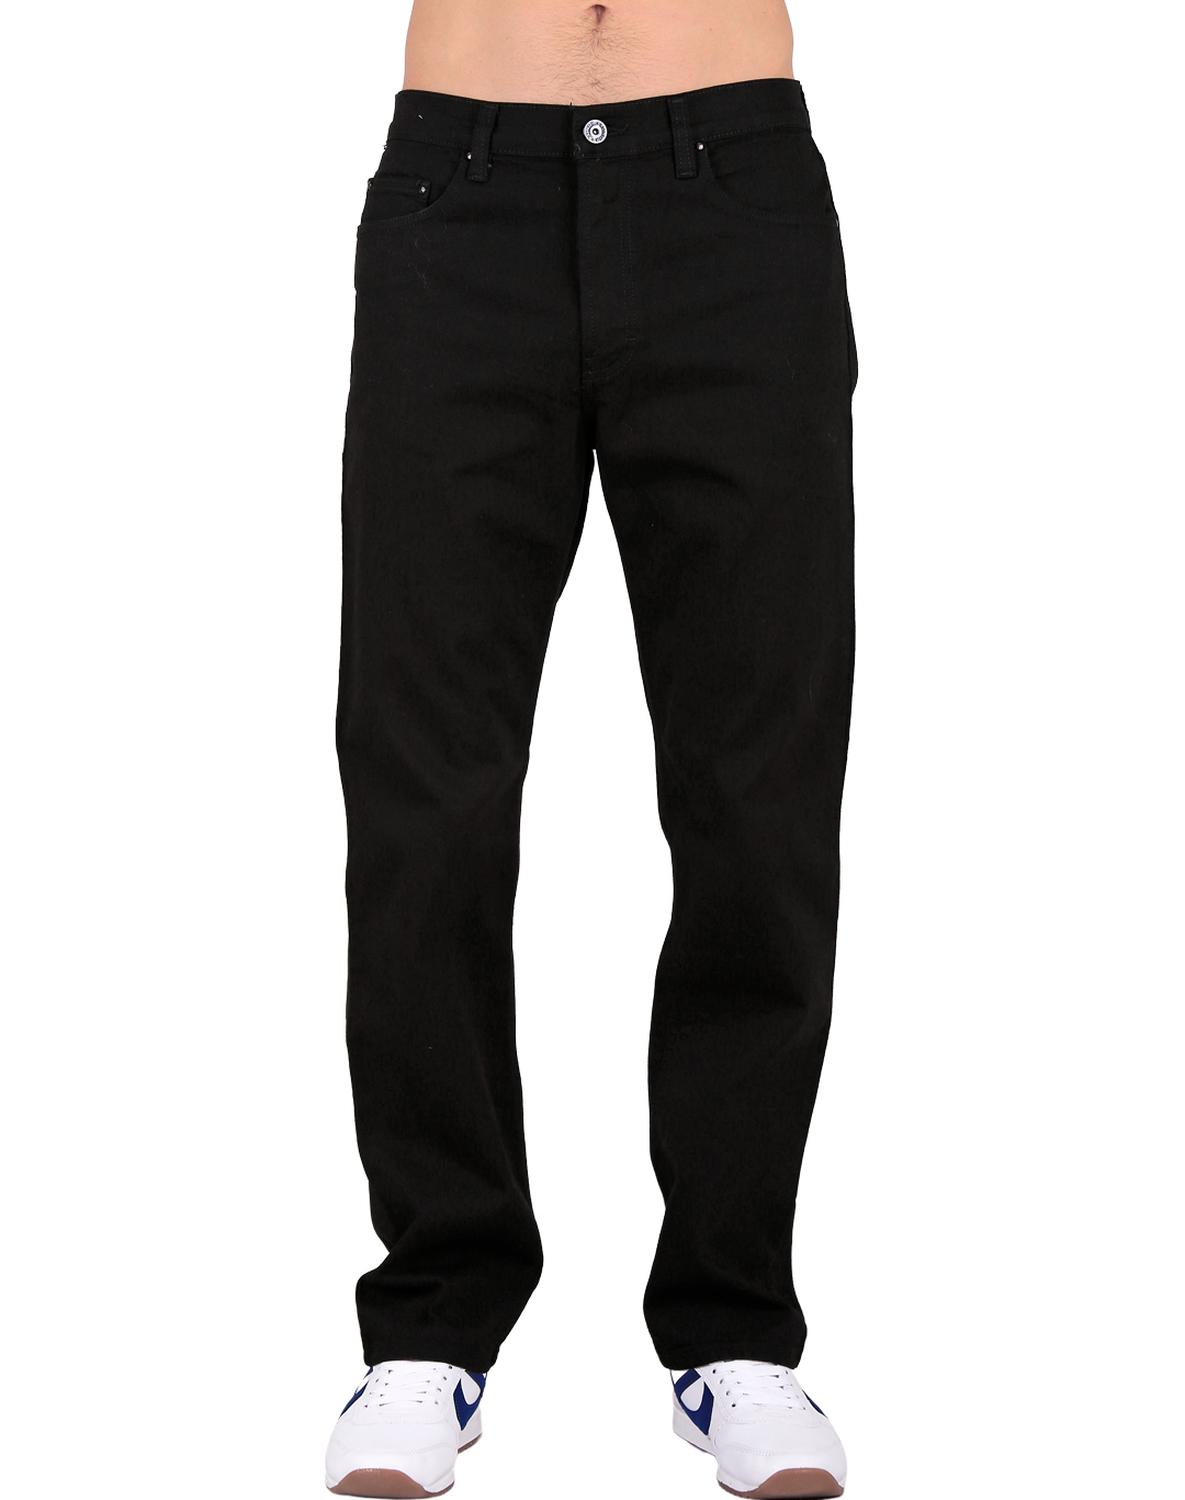 Jeans Básico Recto Hombre Negro Furor Marshal 62106220